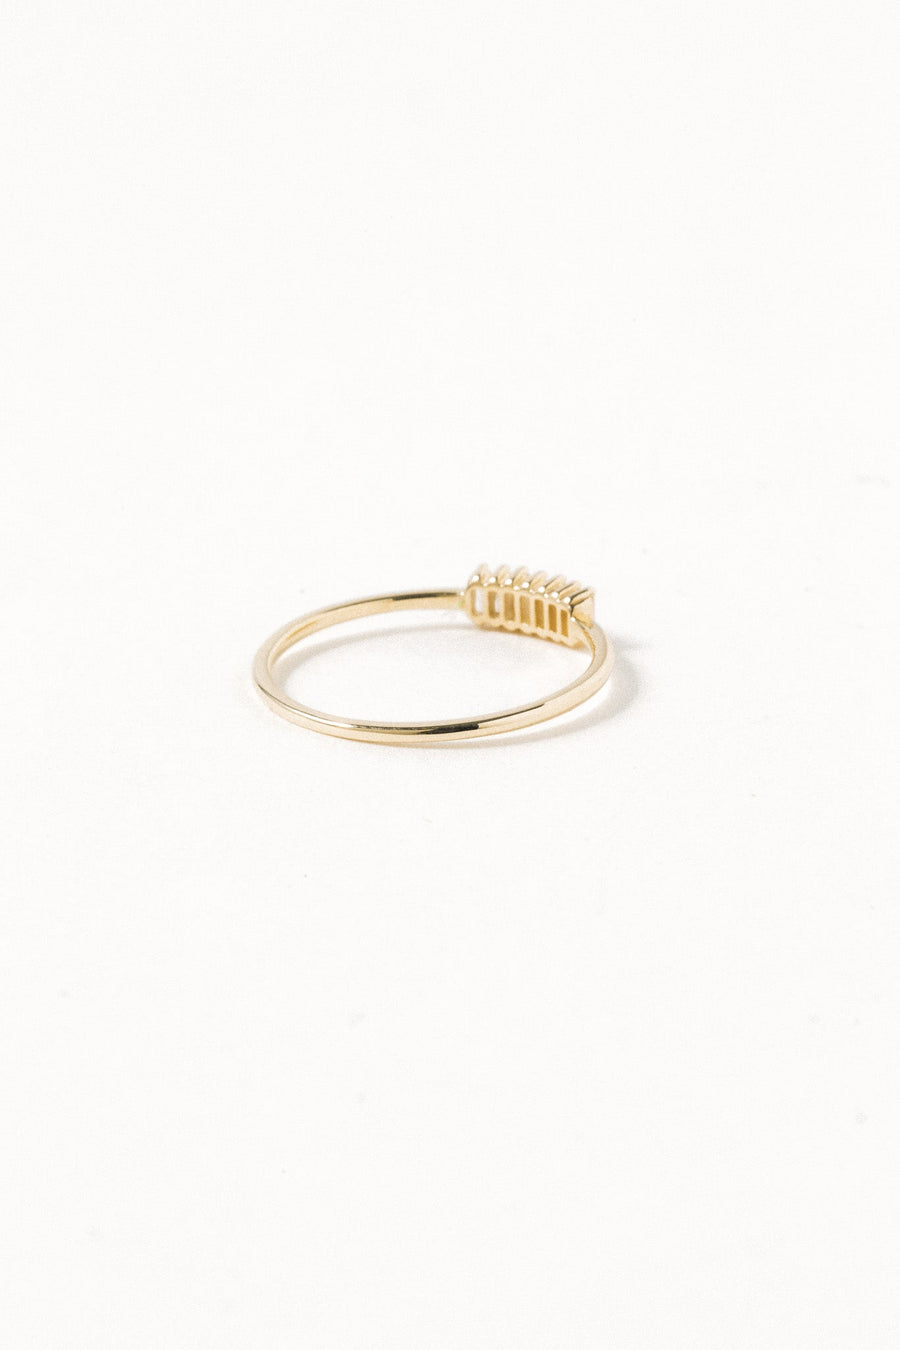 Stuller Jewelry Gold 14kt Stargazed Diamond Ring